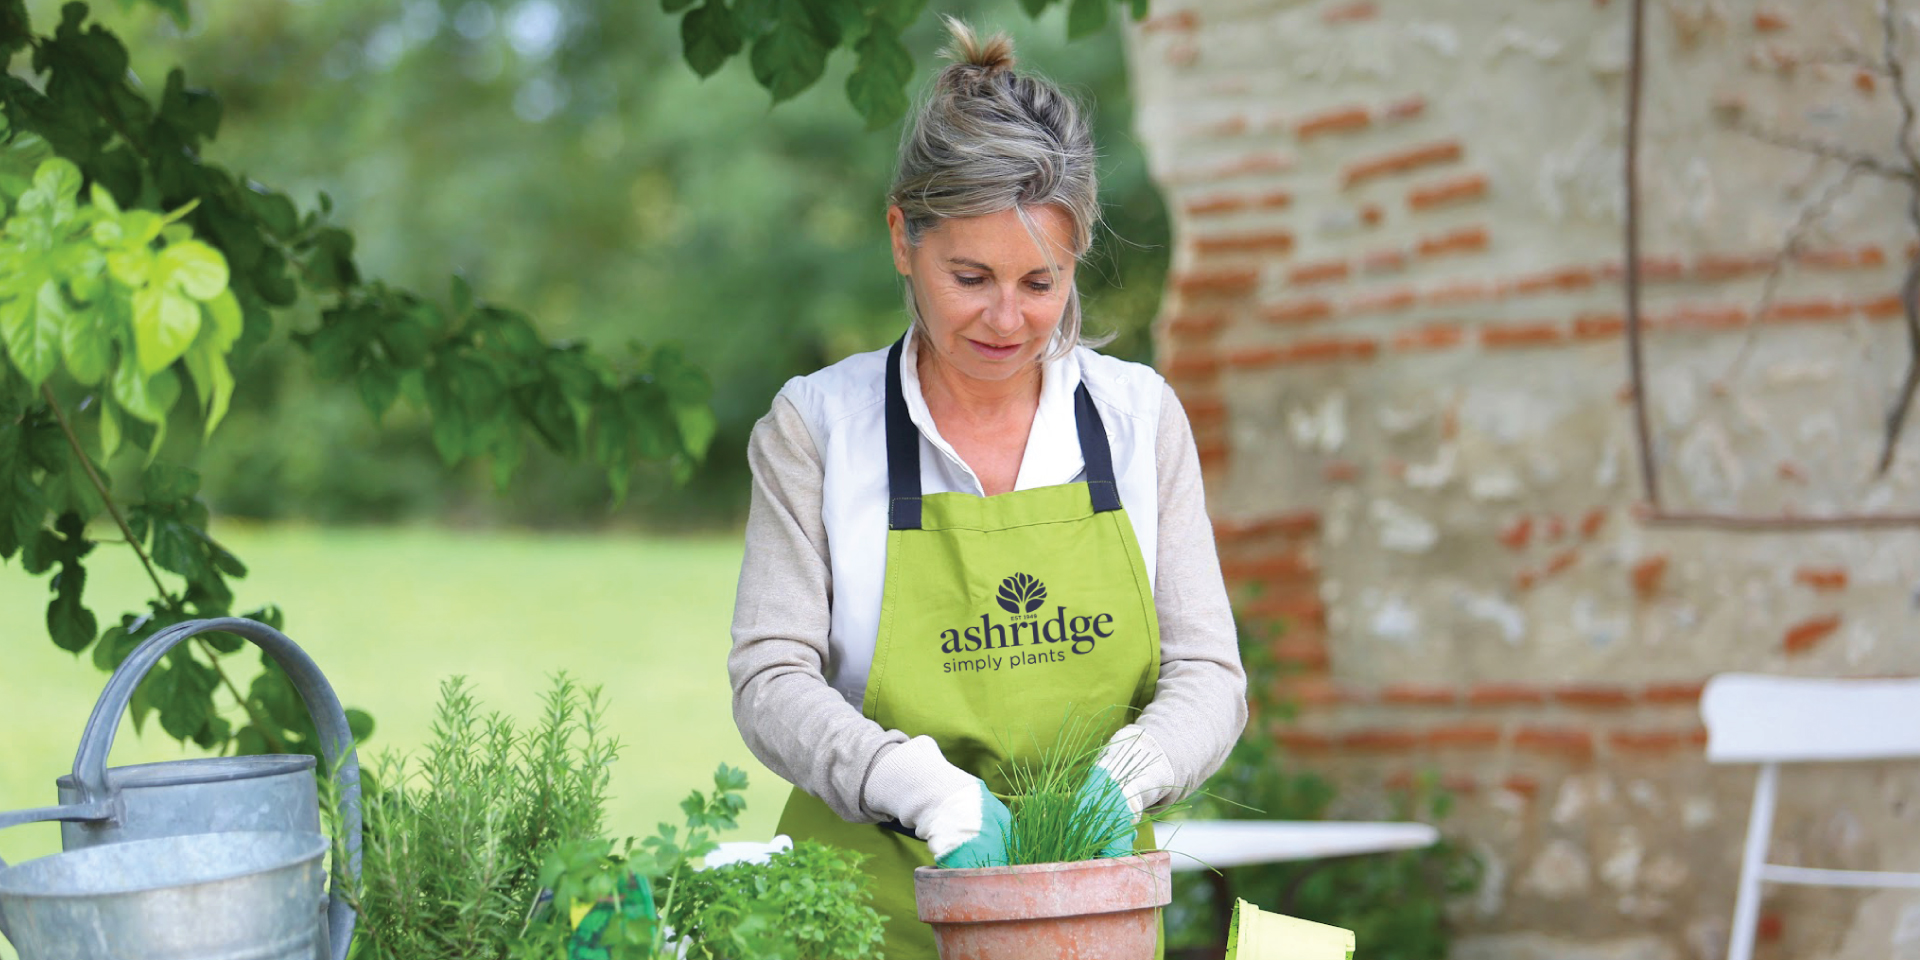 Ashridge potting plants in branded apron